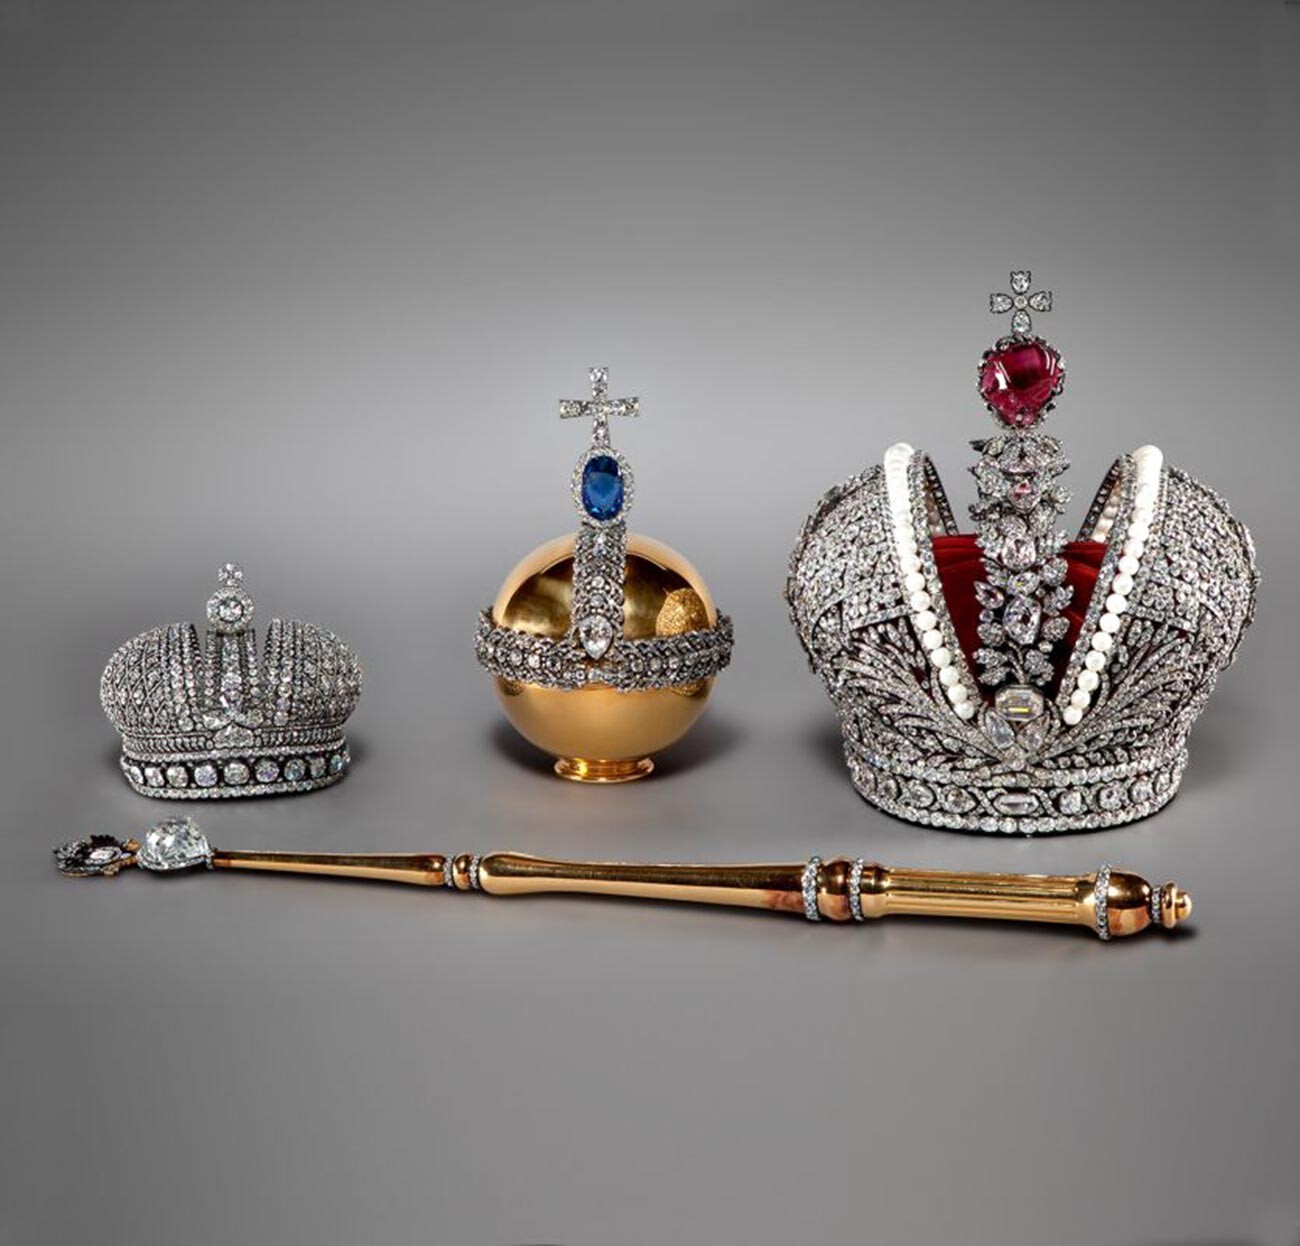 Коронационные регалии русских царей из коллекции Музеев Московского Кремля